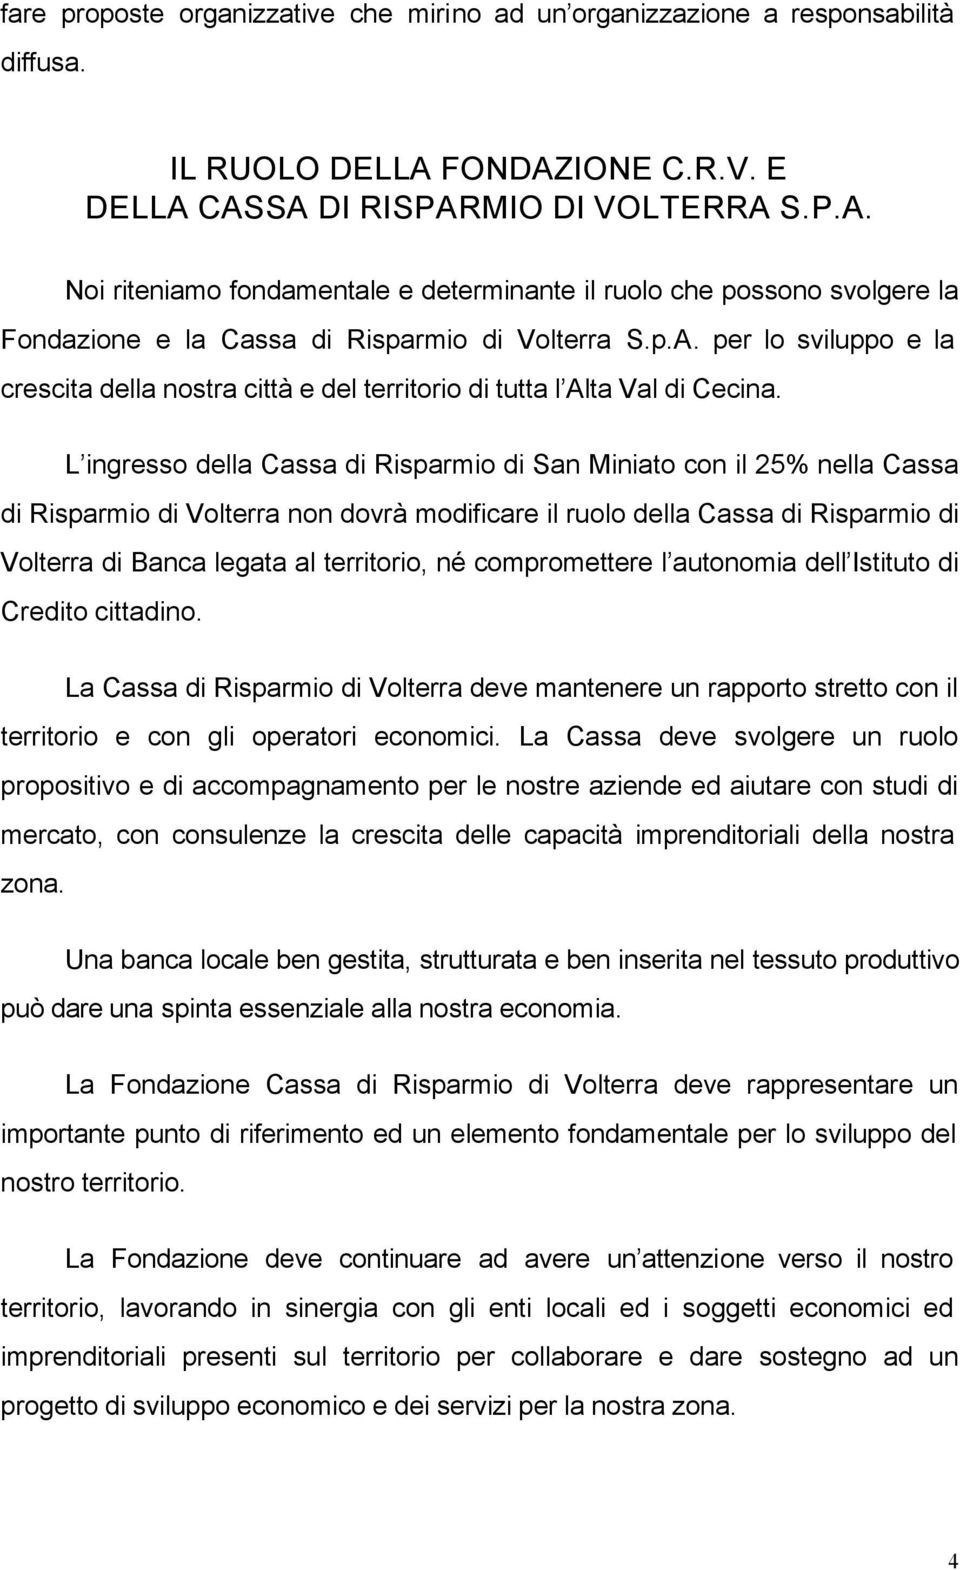 L ingresso della Cassa di Risparmio di San Miniato con il 25% nella Cassa di Risparmio di Volterra non dovrà modificare il ruolo della Cassa di Risparmio di Volterra di Banca legata al territorio, né